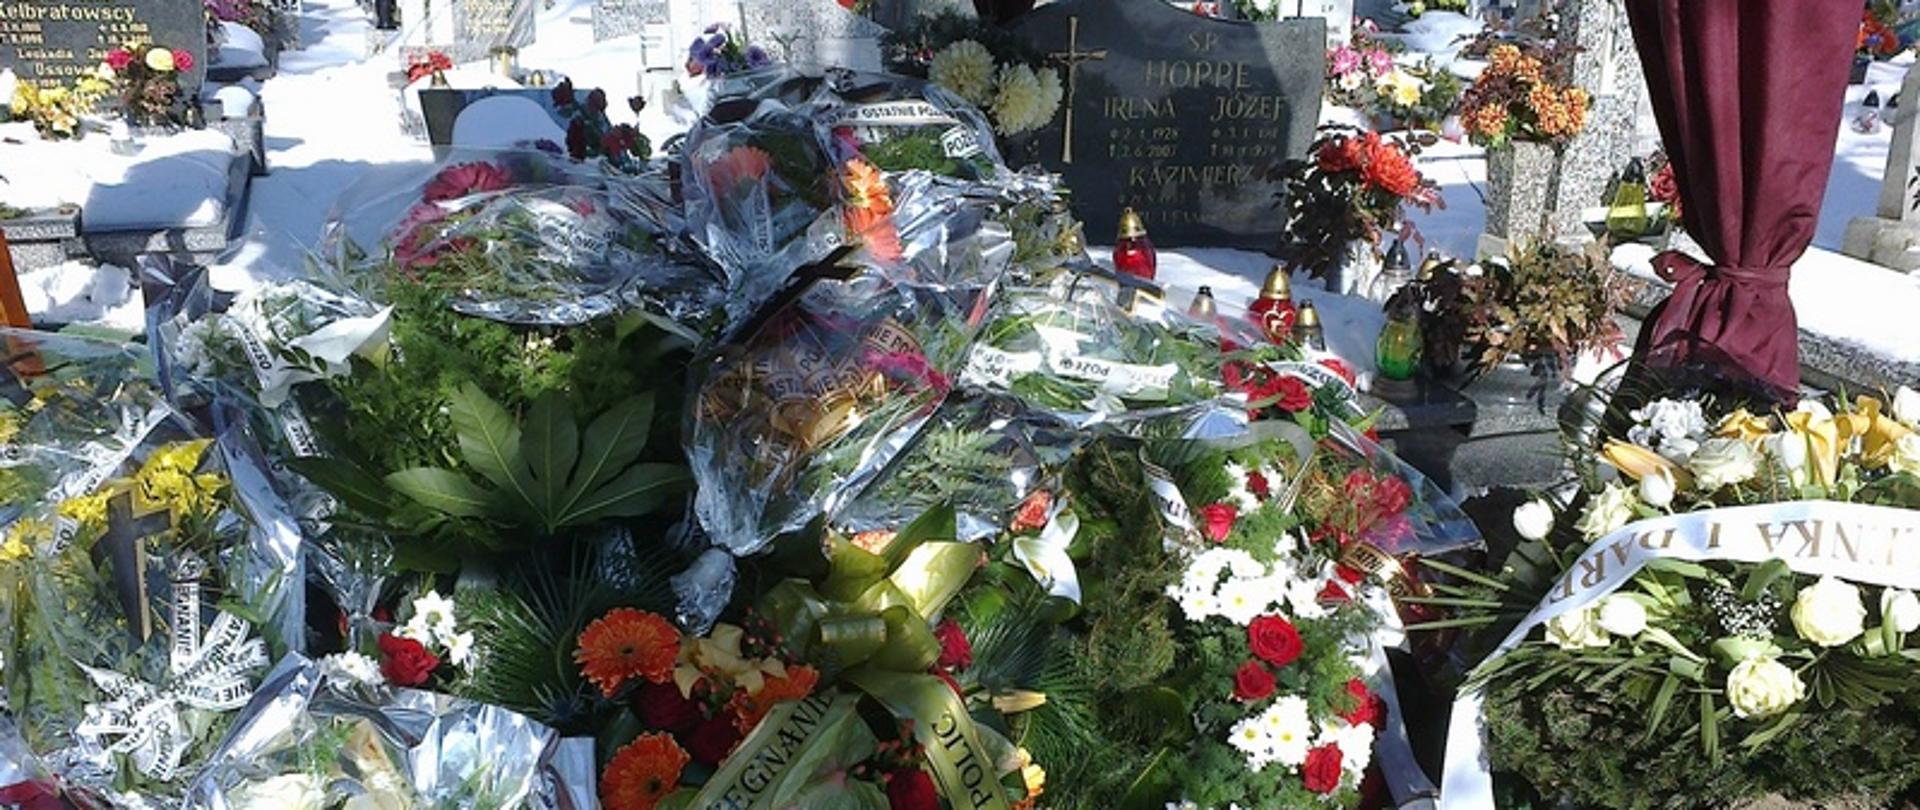 Zdjęcie przedstawia grób z kwiatami